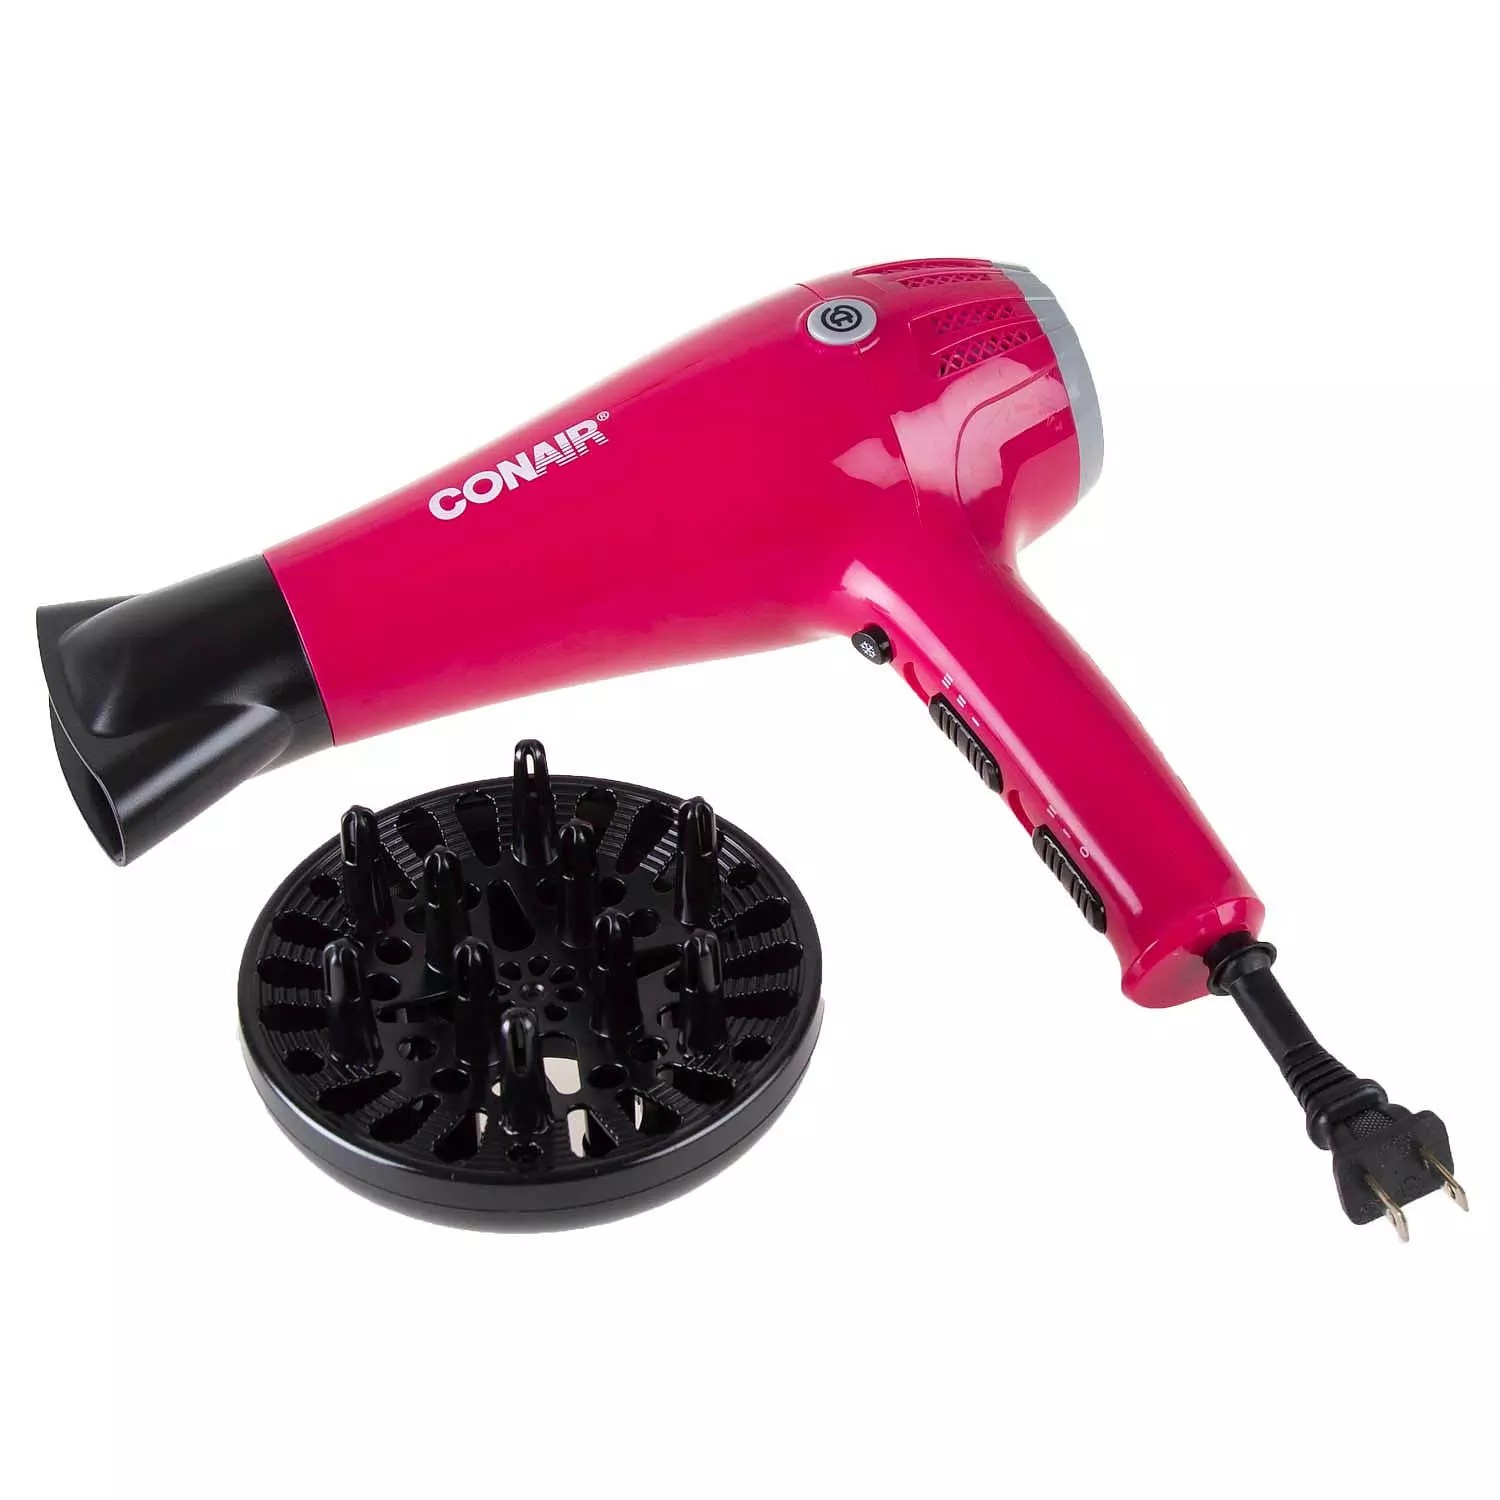 Conair - Cord-keeper hair dryer, 1875W. Colour: pink